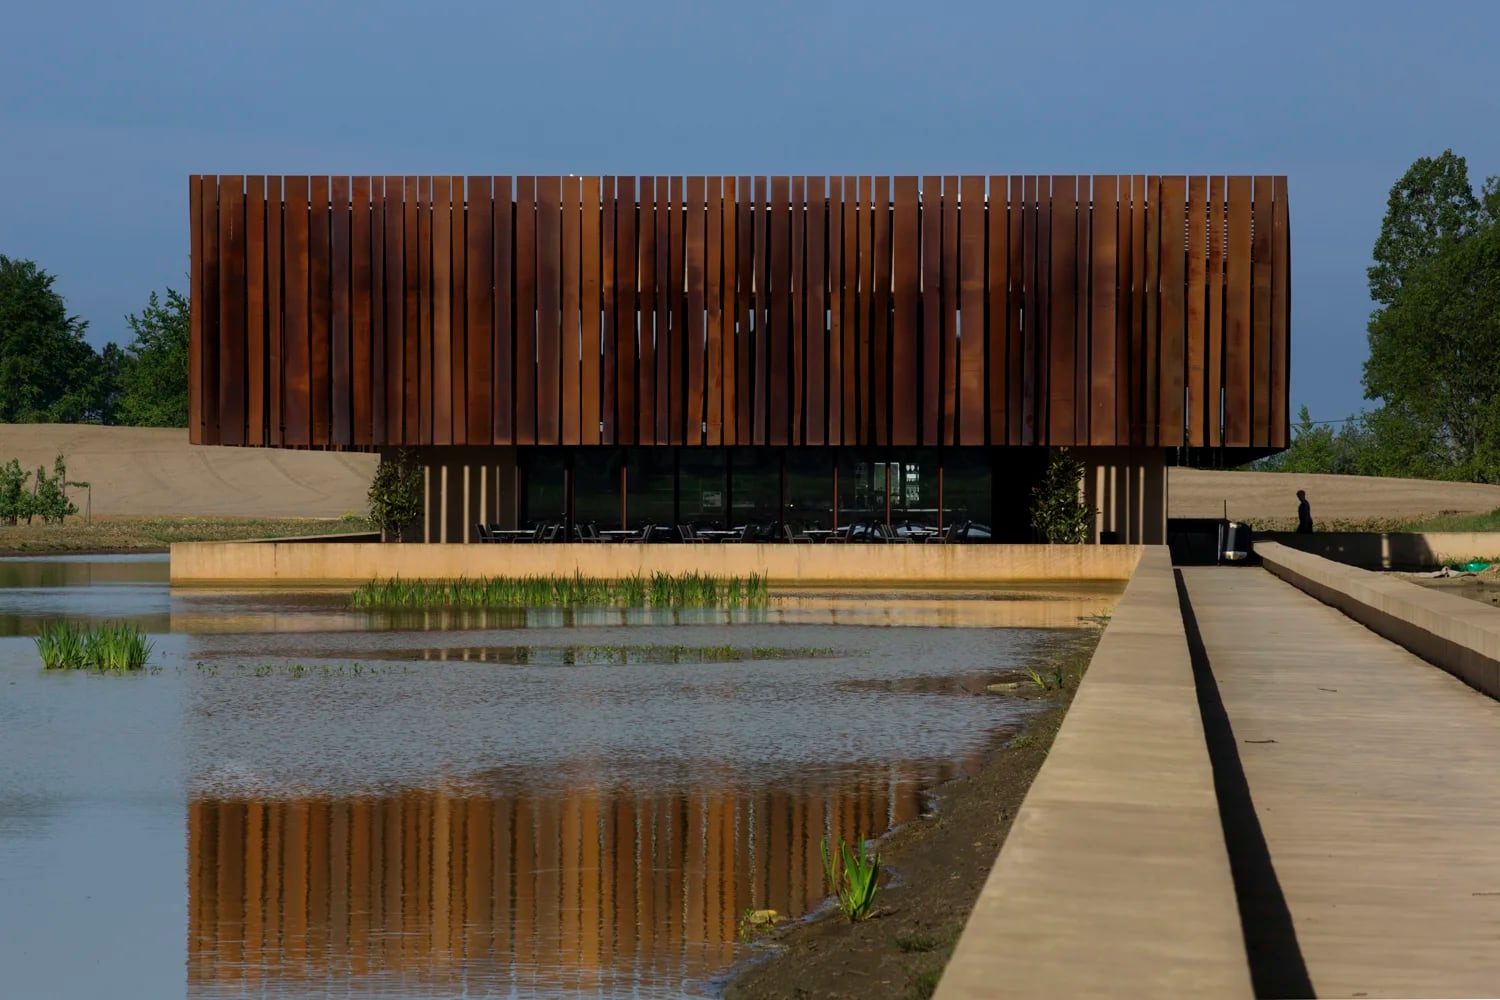 El crematorio Hofheide está situado en medio de un lago en Holsbeek, Bélgica. Es parte de una ola de nuevos trabajos de diseño destinados a reconcebir la muerte